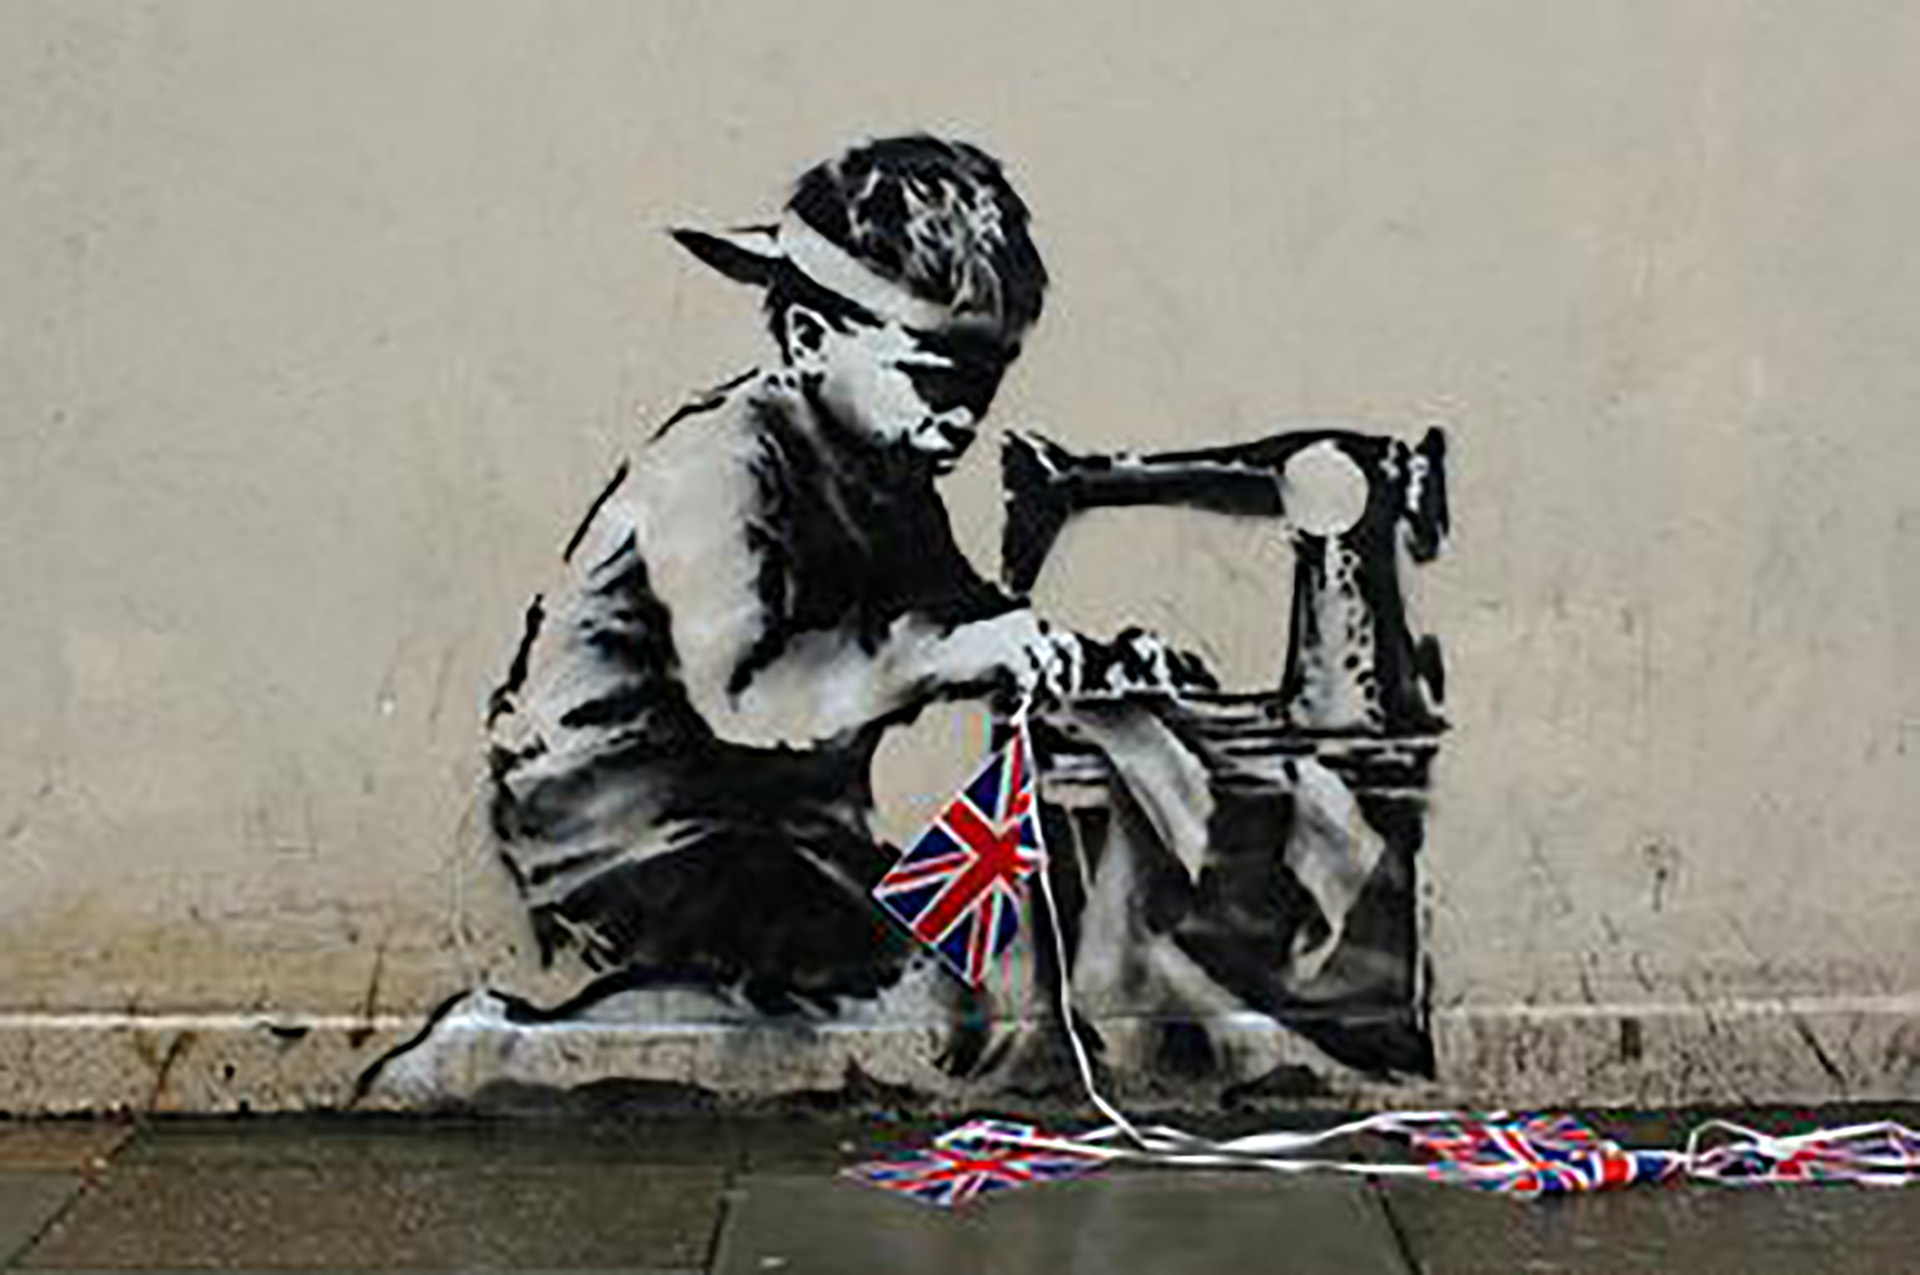 La obra de Banksy "Slave labour", robada en febrero de 2013 de las calles de Londres